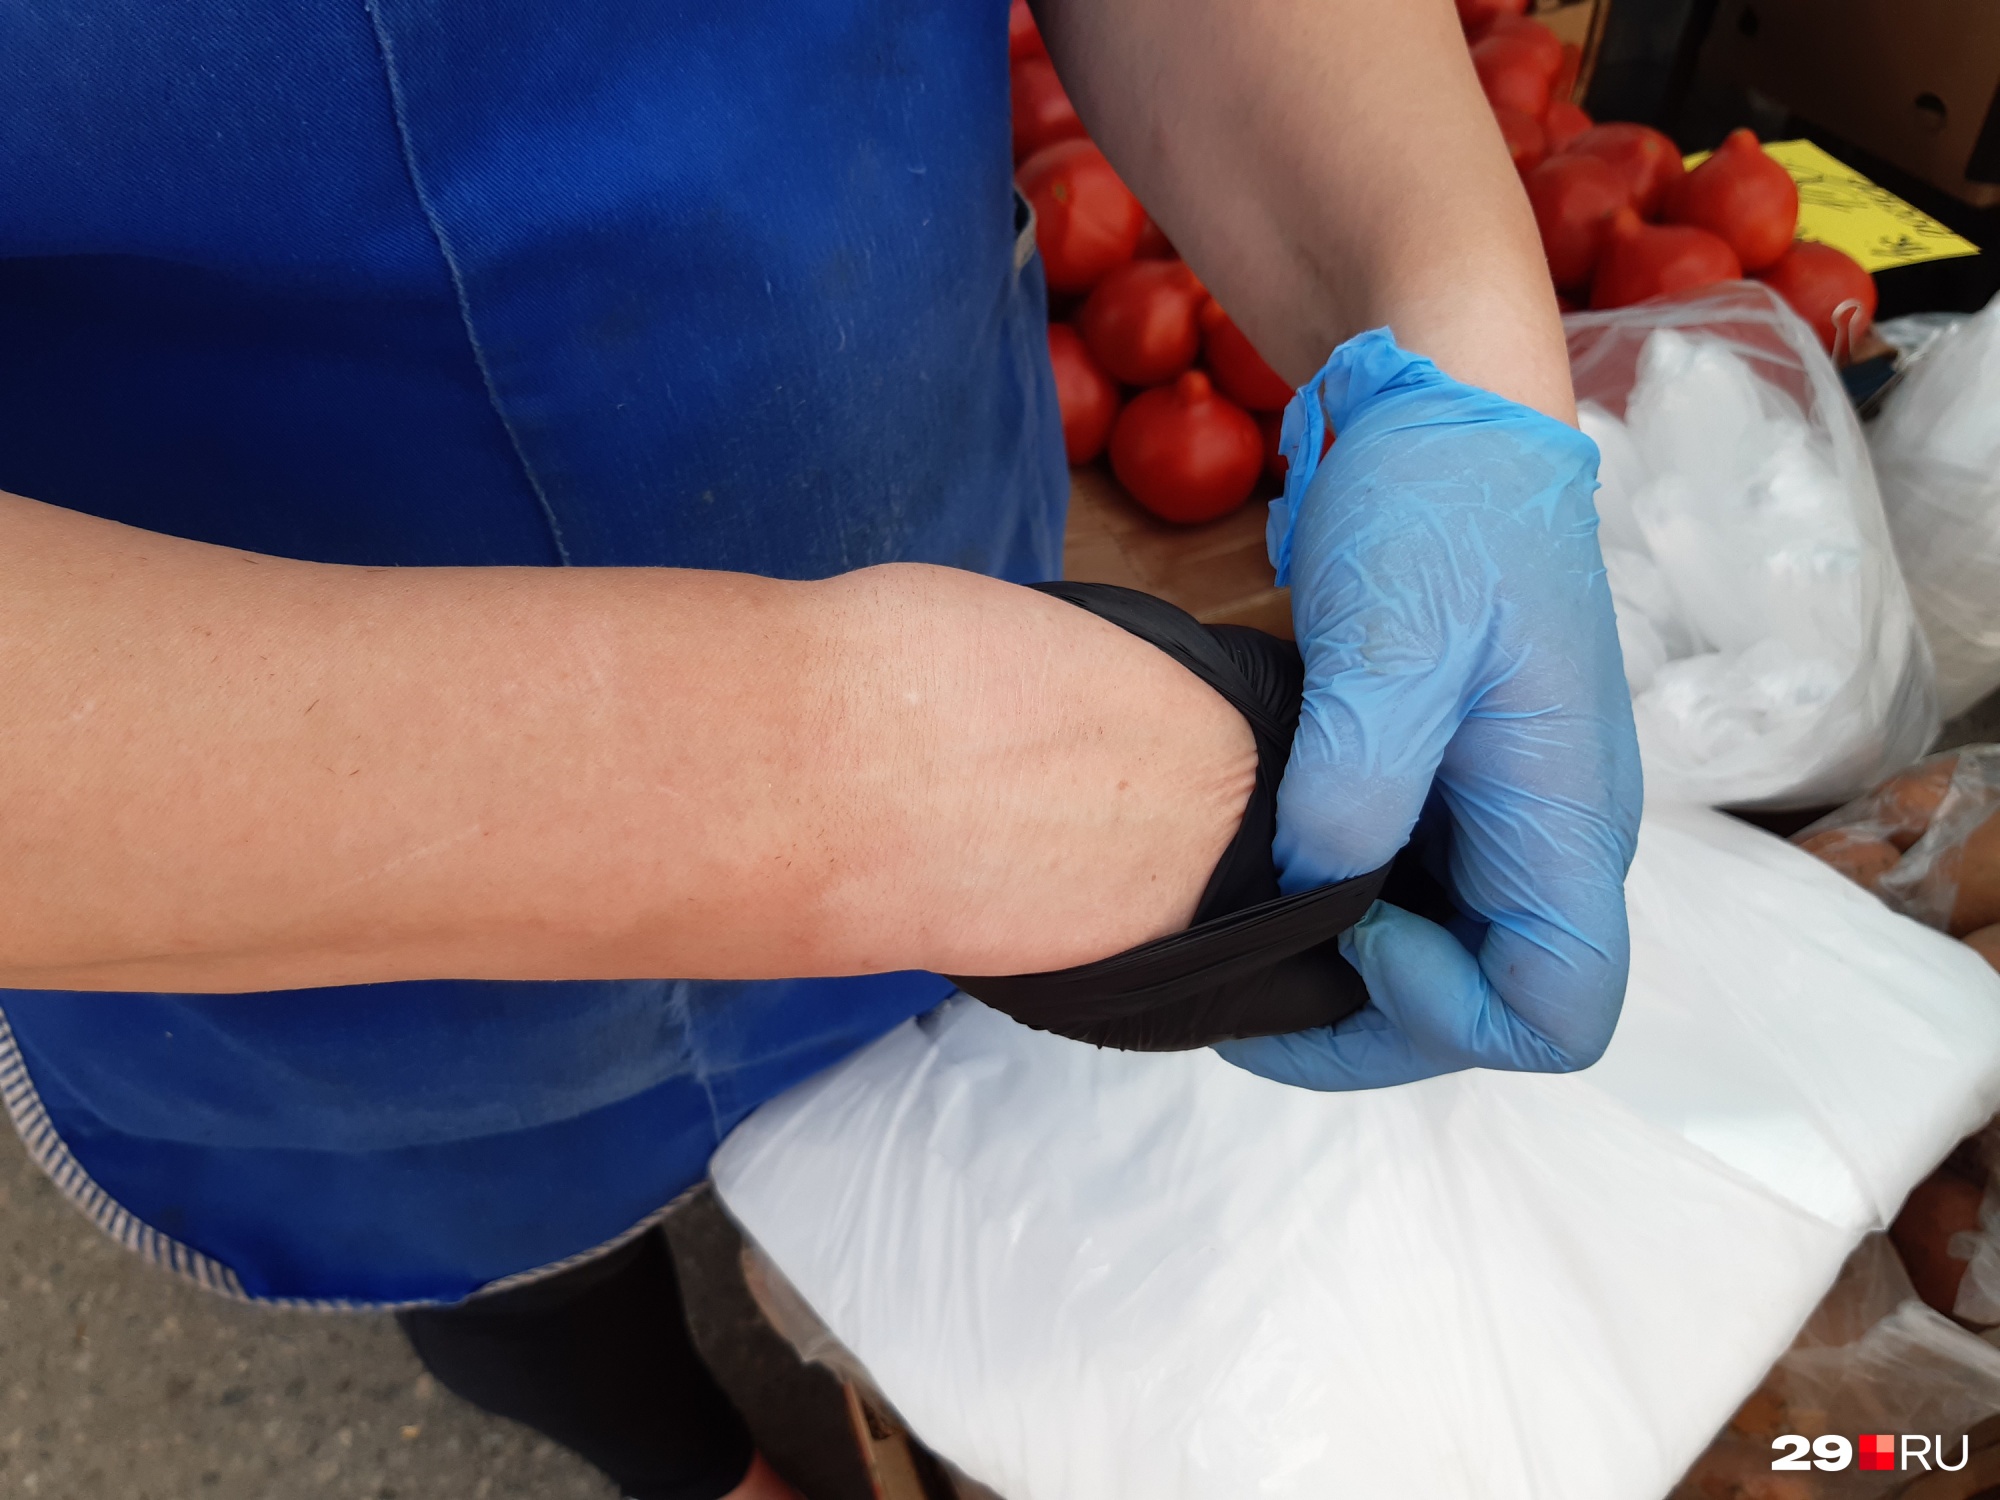 Продавец овощей, ягод и фруктов Анна показывает профессиональный загар по перчатку